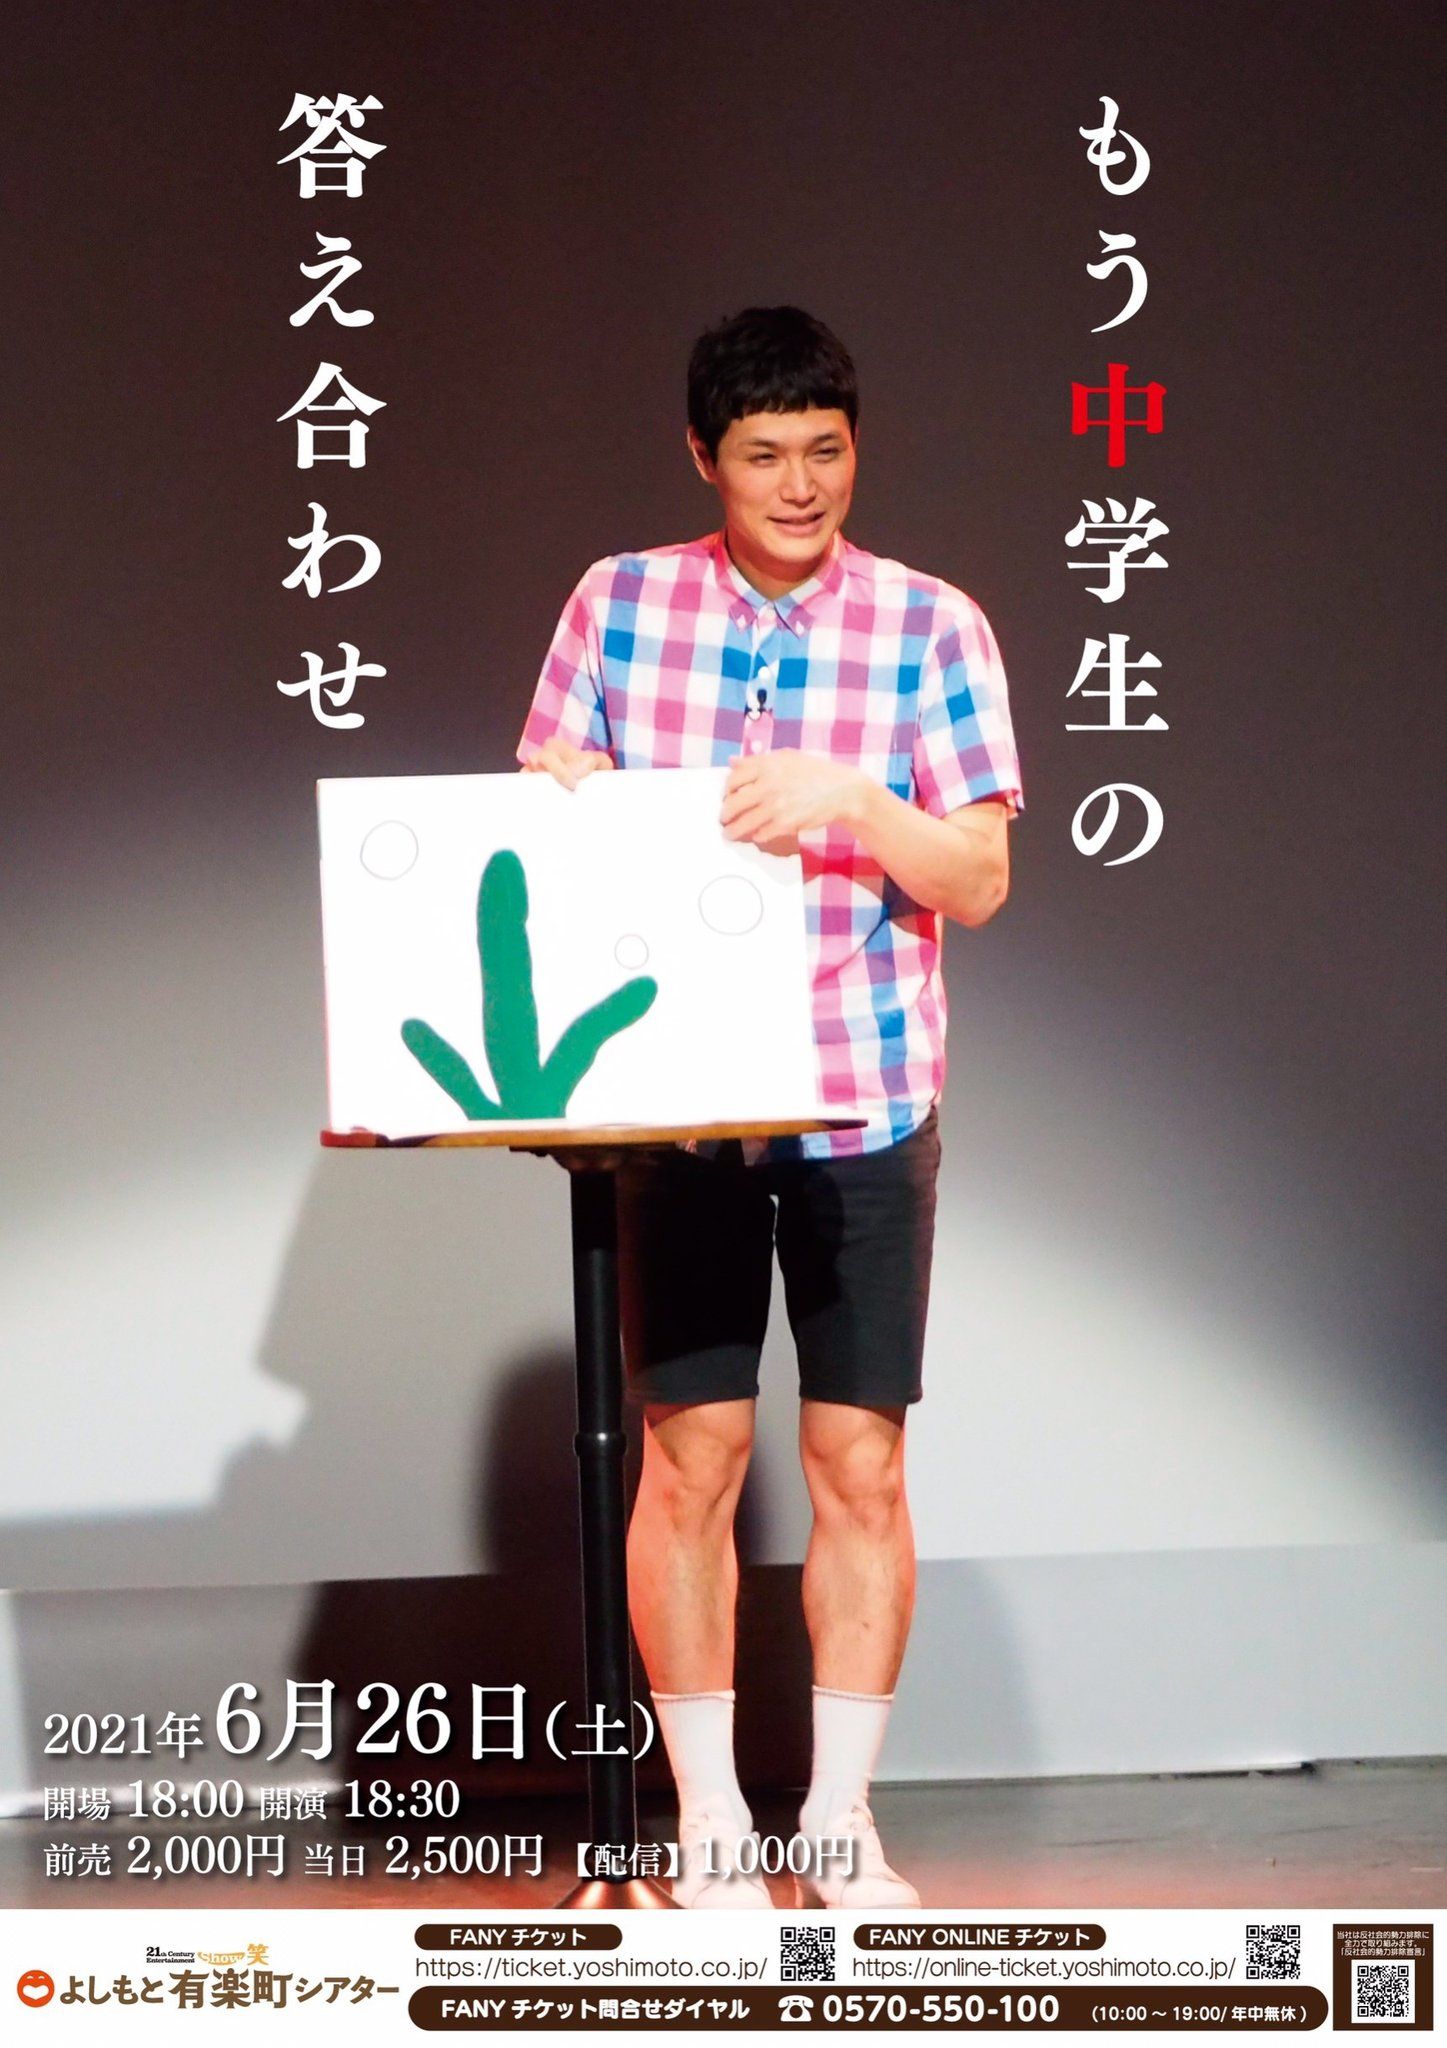 NHK朝ドラ『カムカムエヴリバディ』にも出演！もう中学生、「小道具ゴーストライター騒動」から1か月経過の今…「号泣している」ワケ!!の画像